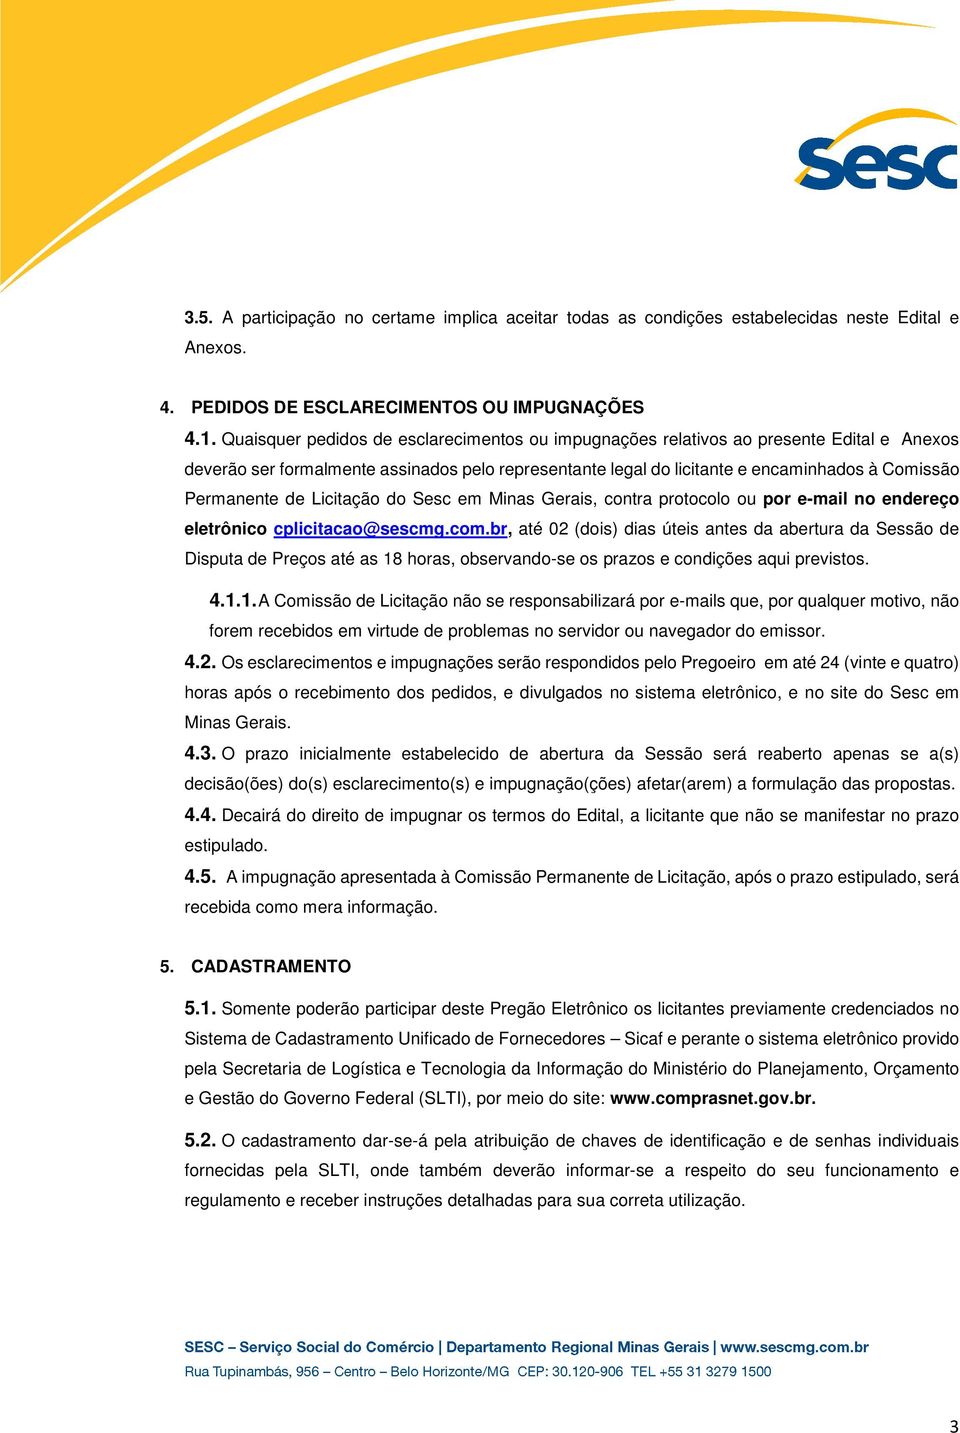 de Licitação do Sesc em Minas Gerais, contra protocolo ou por e-mail no endereço eletrônico cplicitacao@sescmg.com.